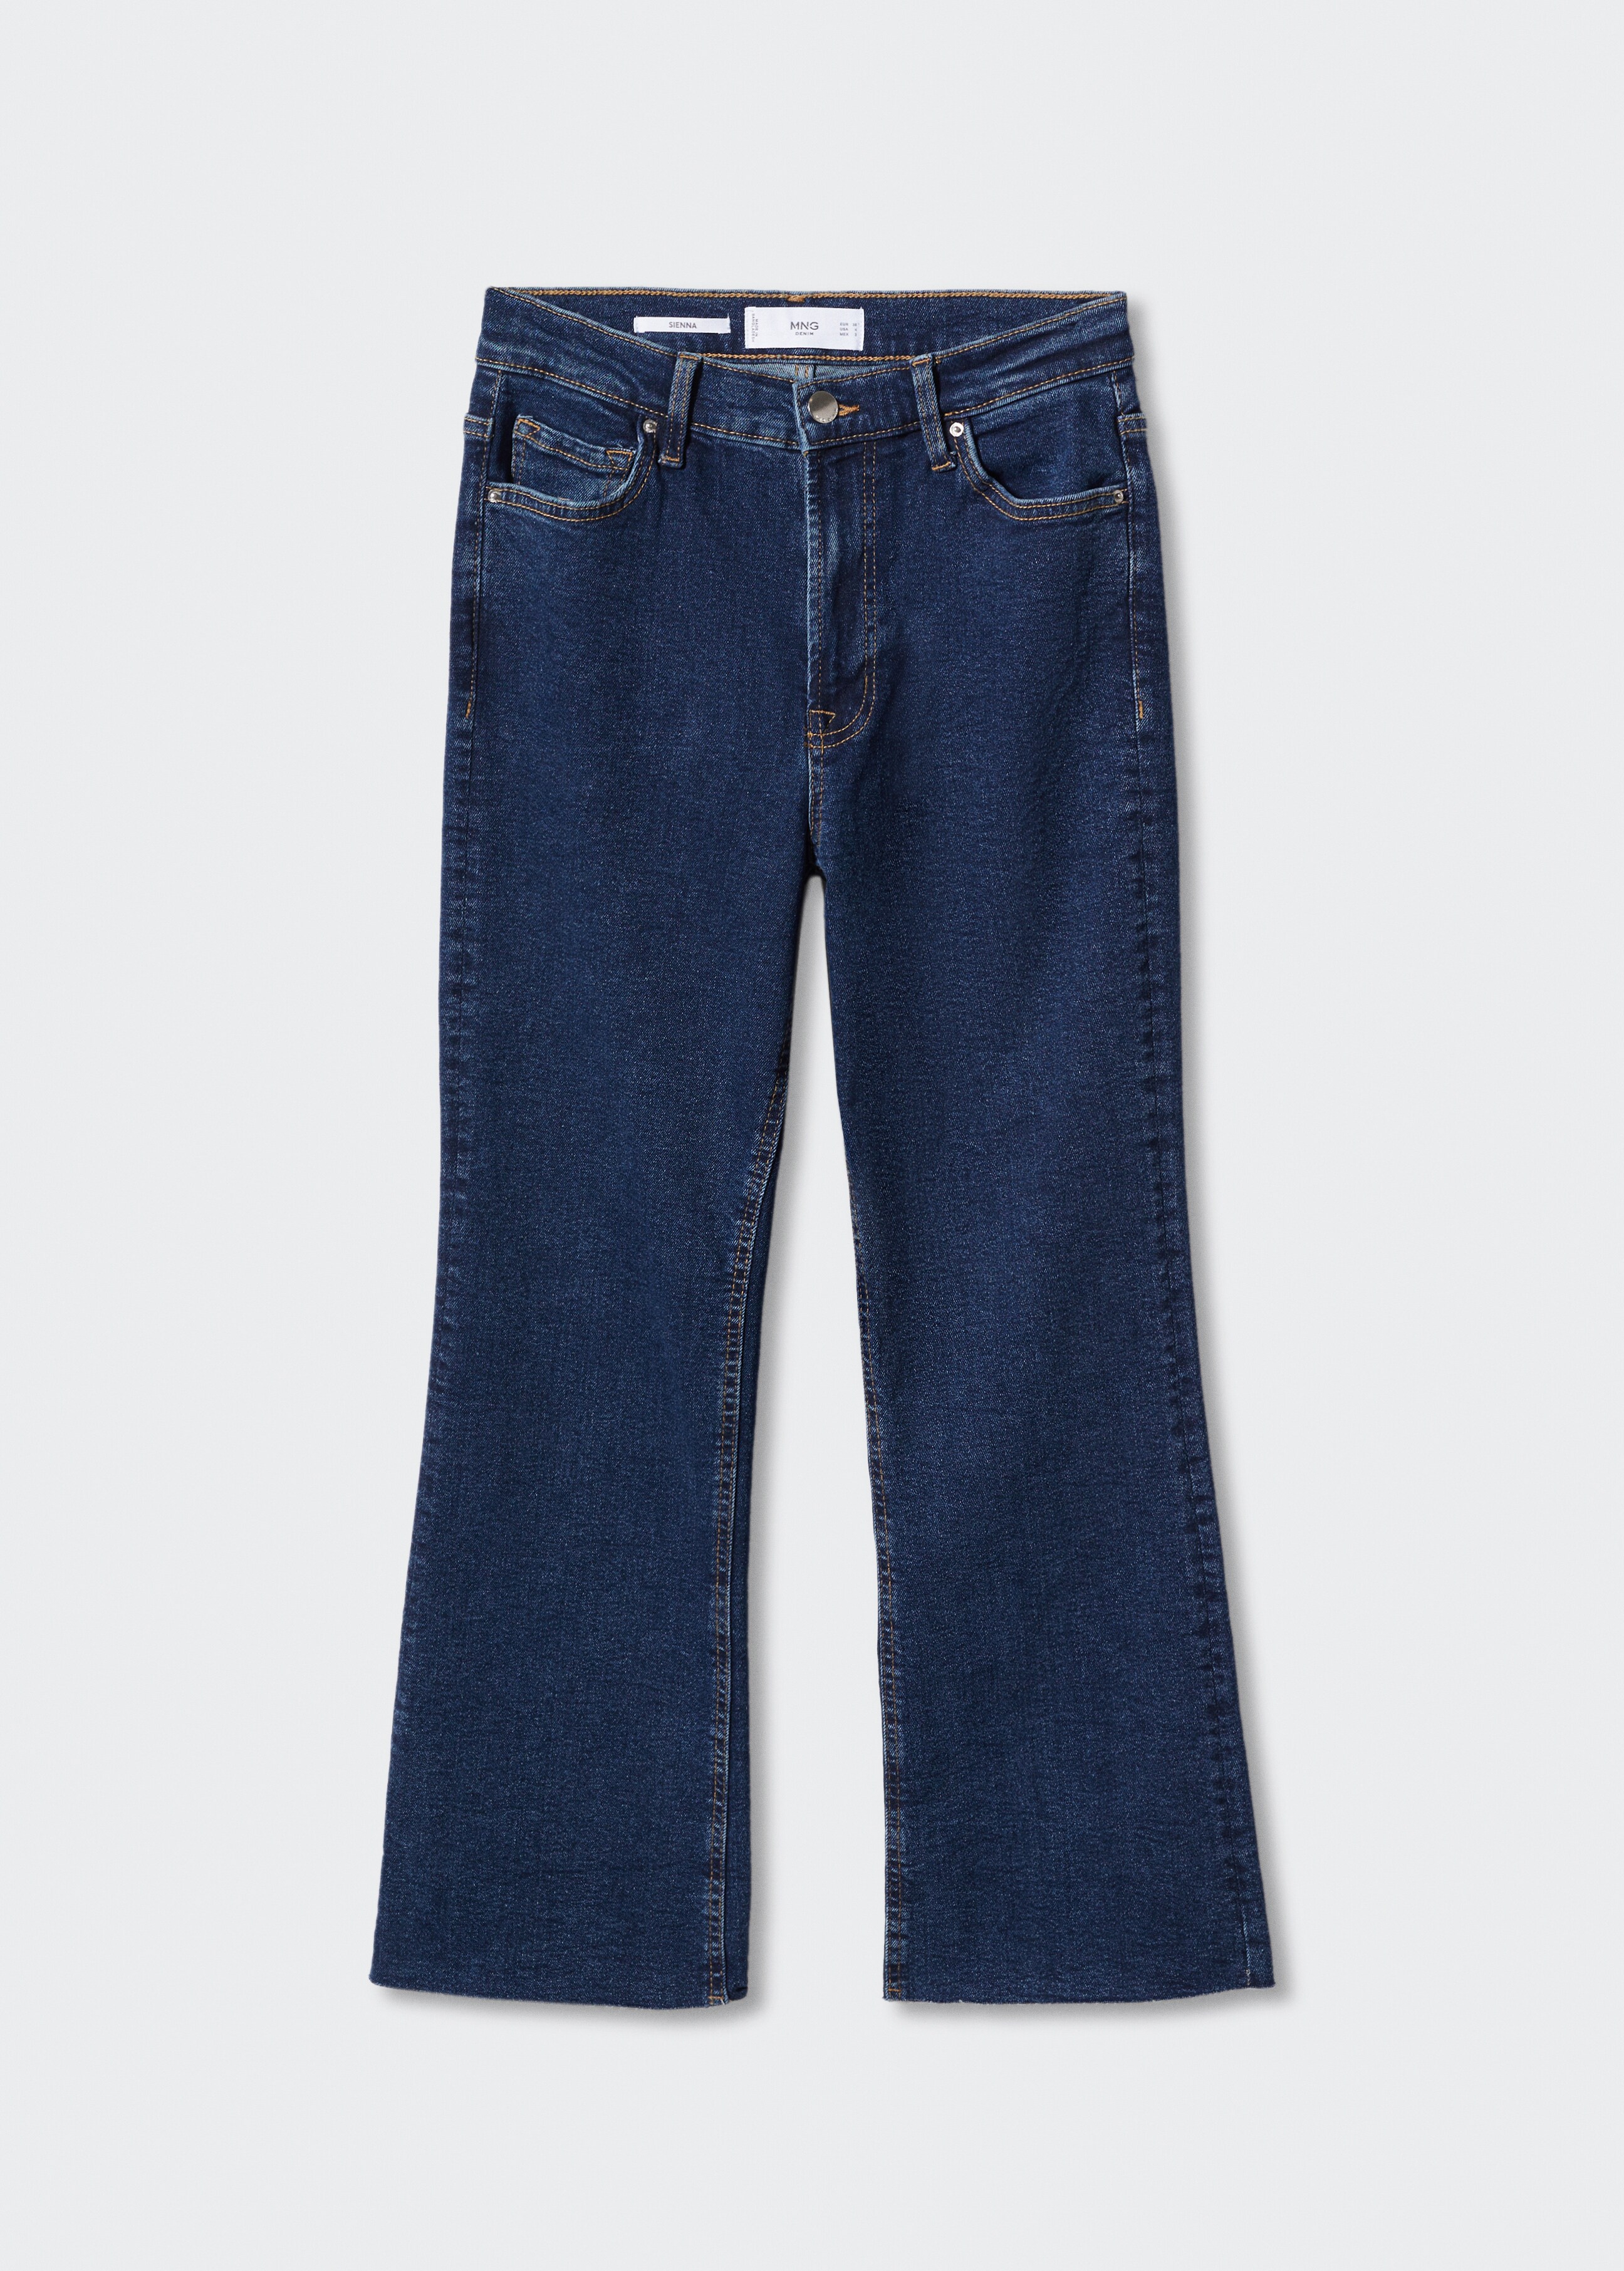 Jeans flare crop - Artículo sin modelo